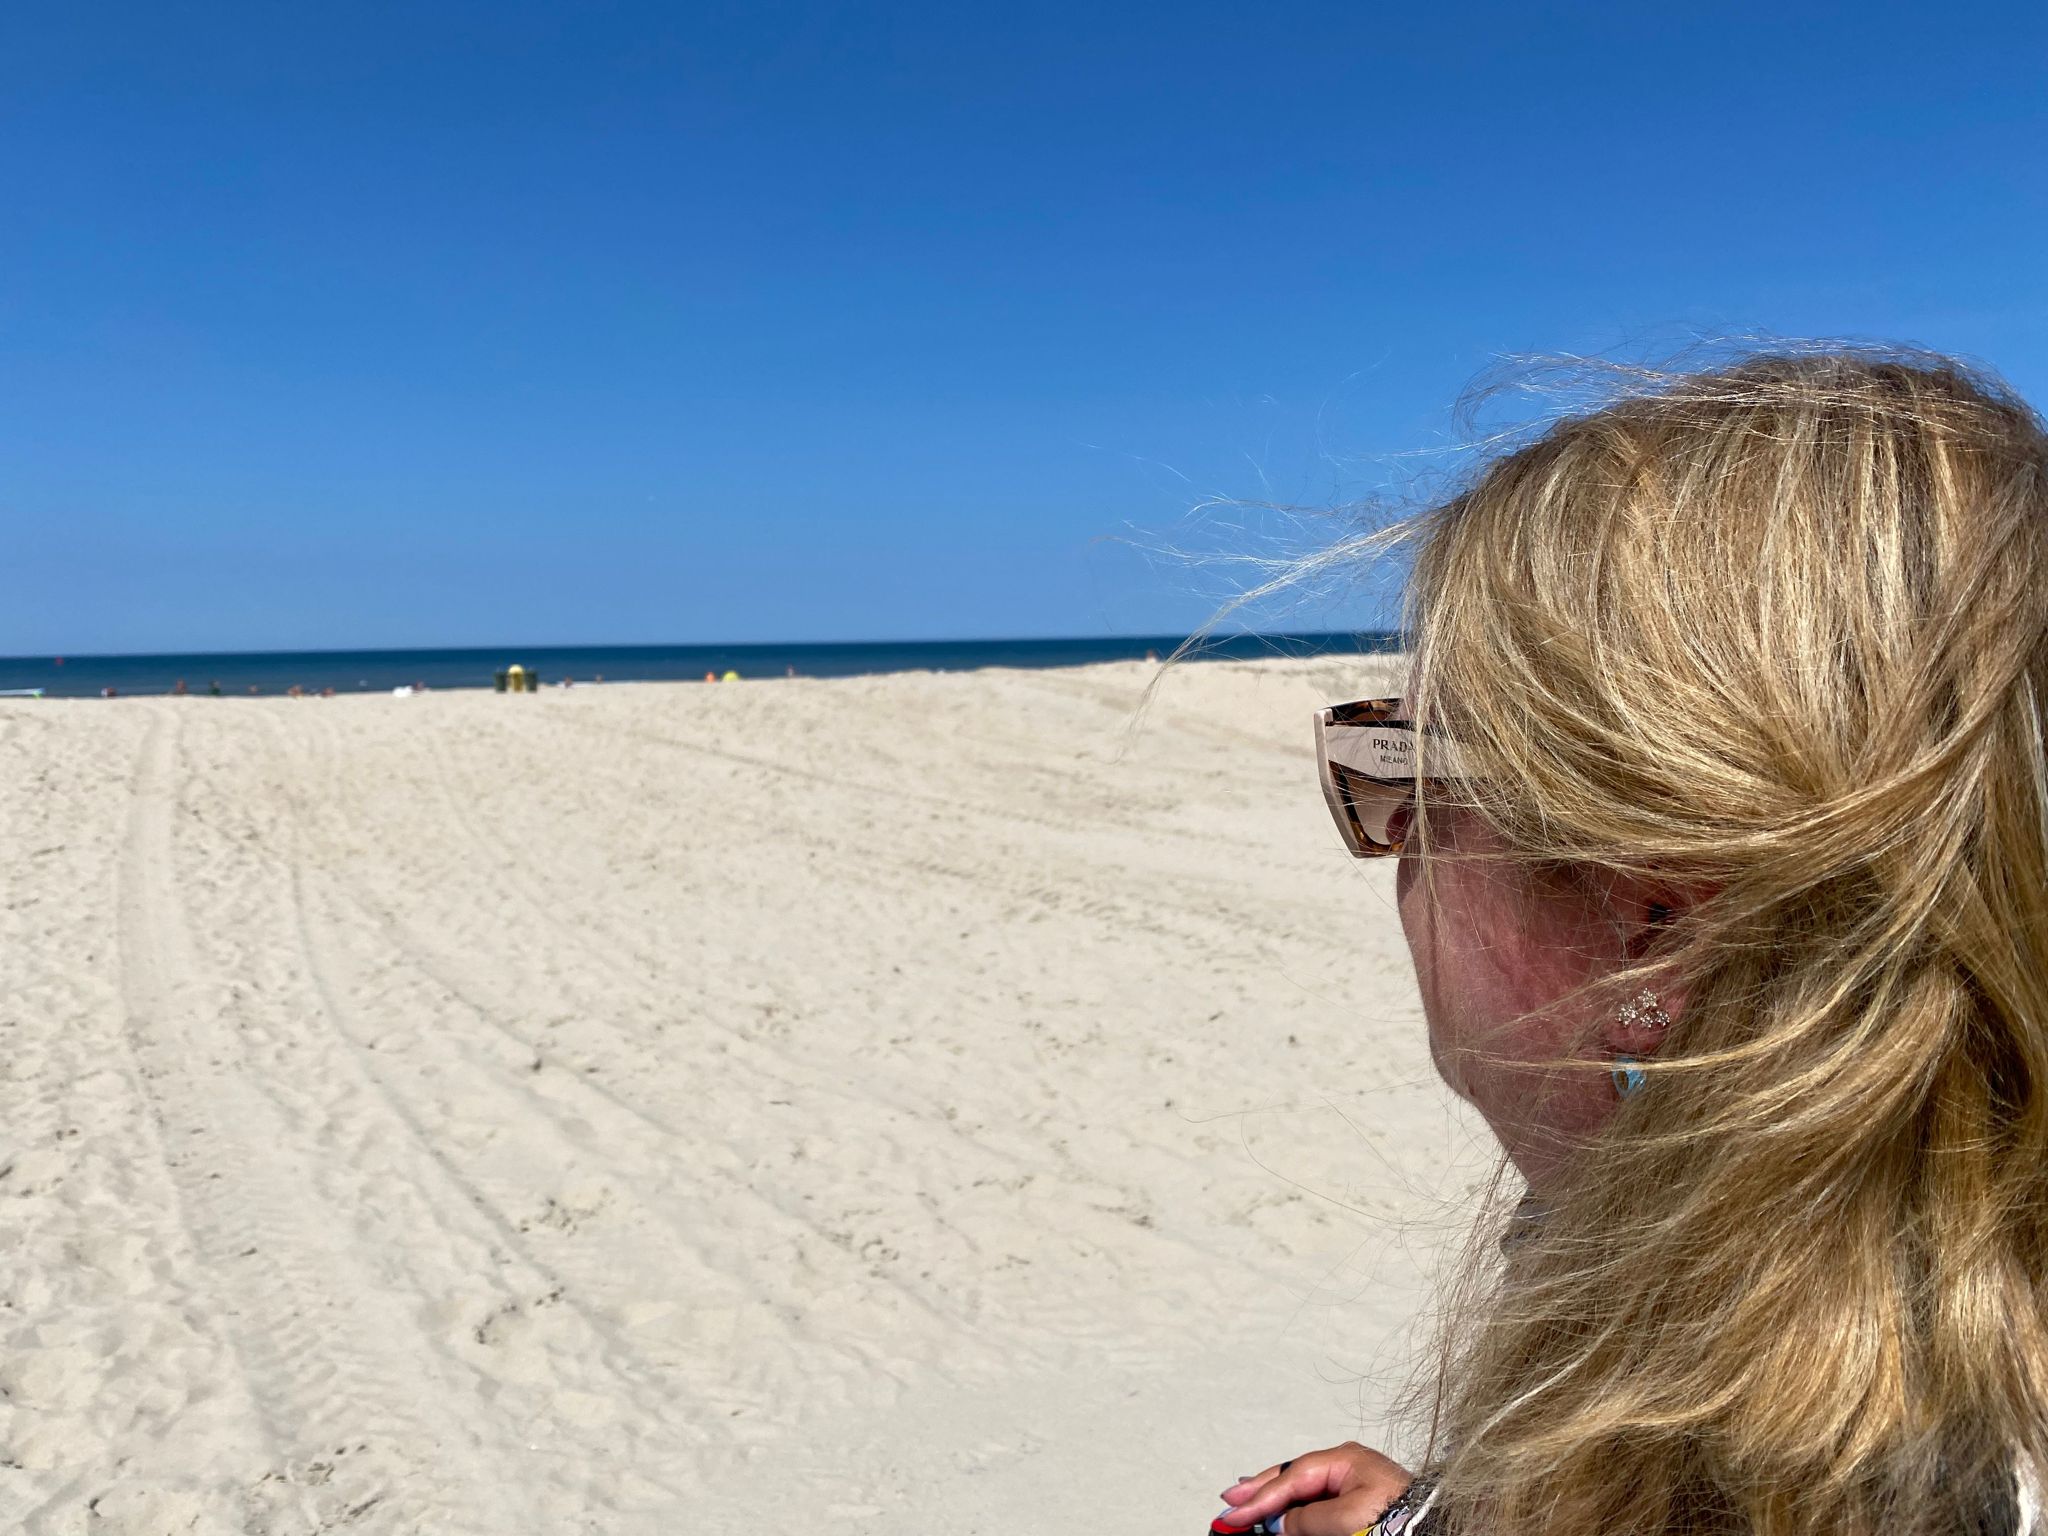 Judith vanachter gezien op een strand terwijl ze kijkt naar de zee